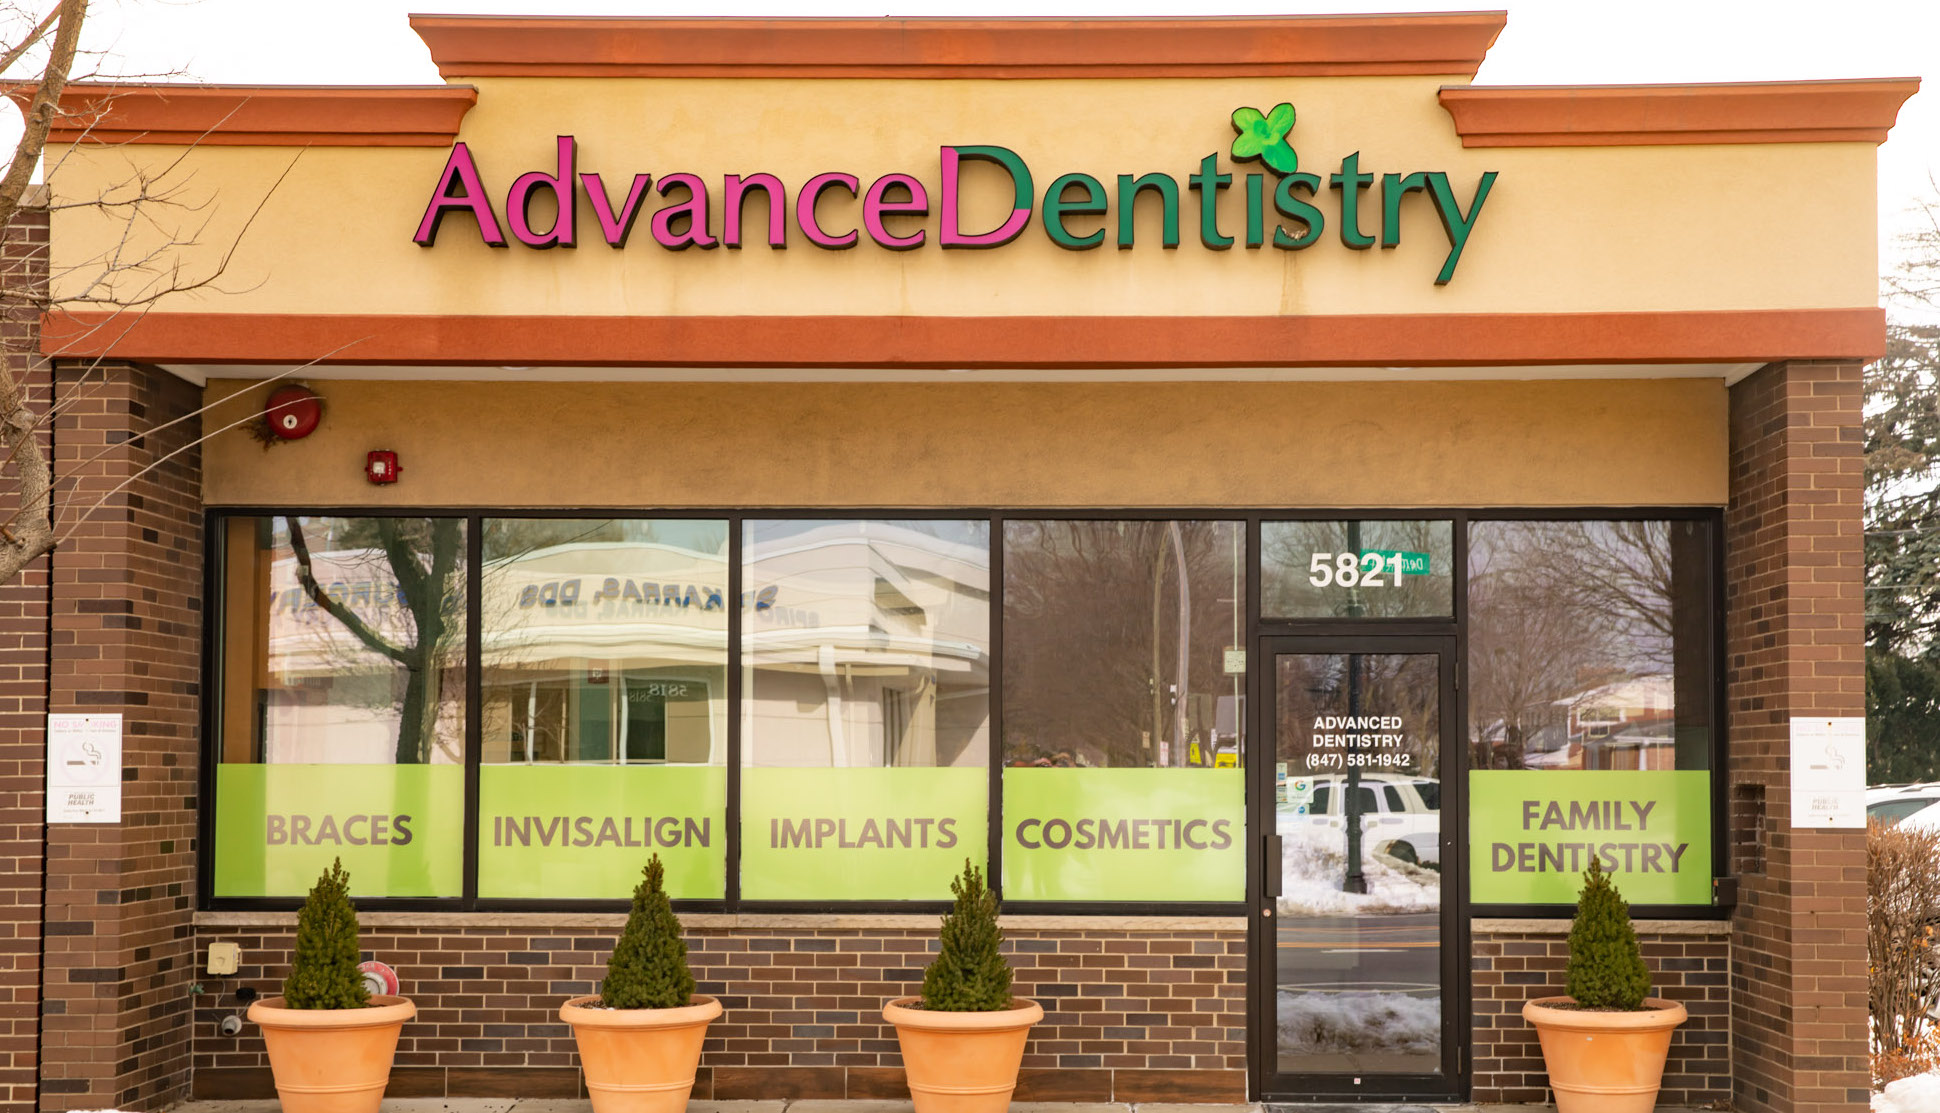 Advanced Dentistry Morton Grove